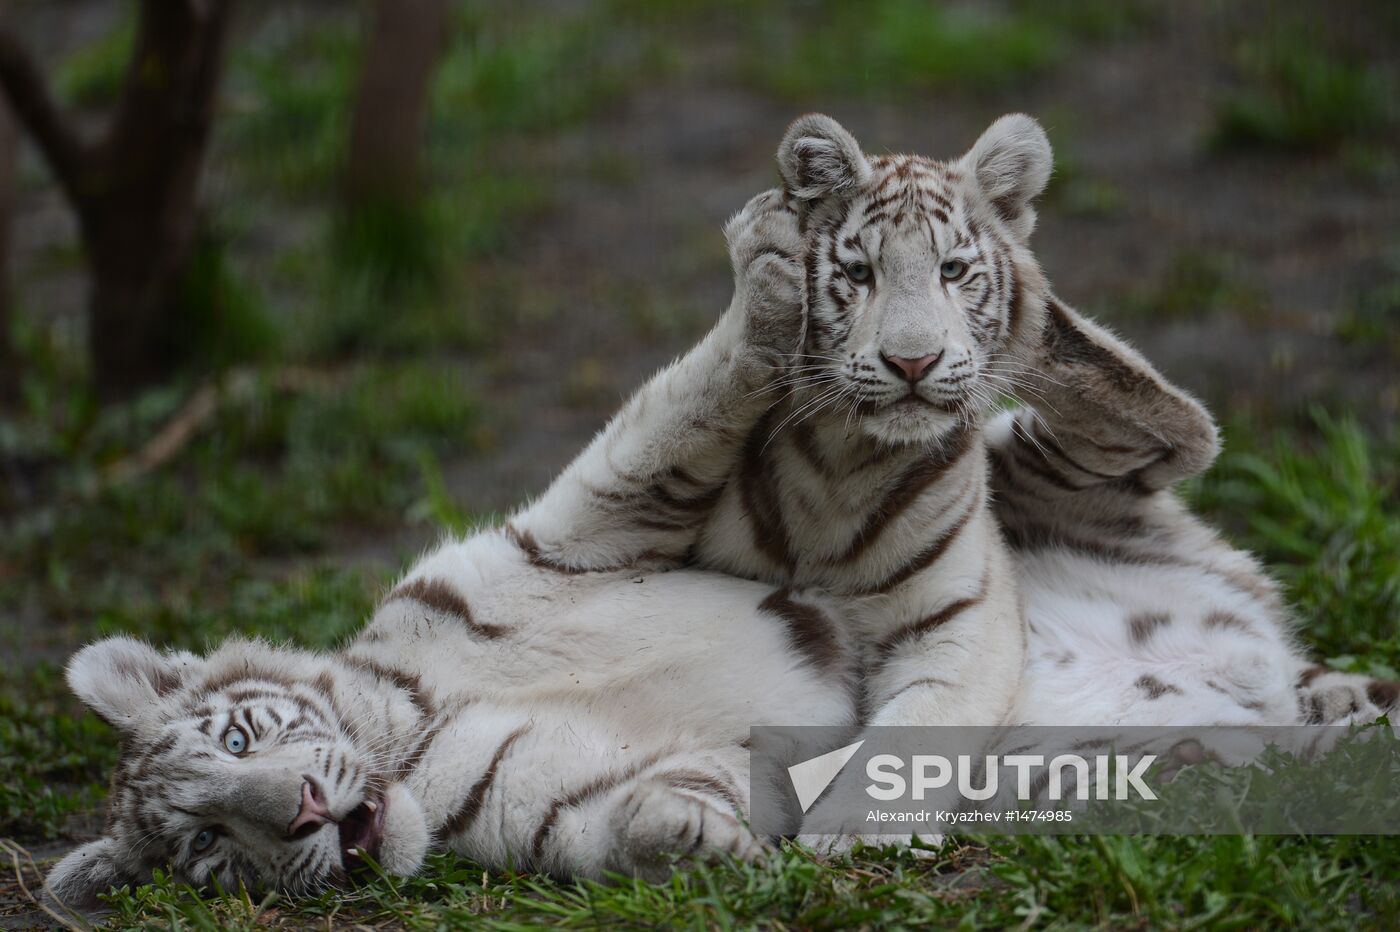 Predators at Novosibirsk Zoo